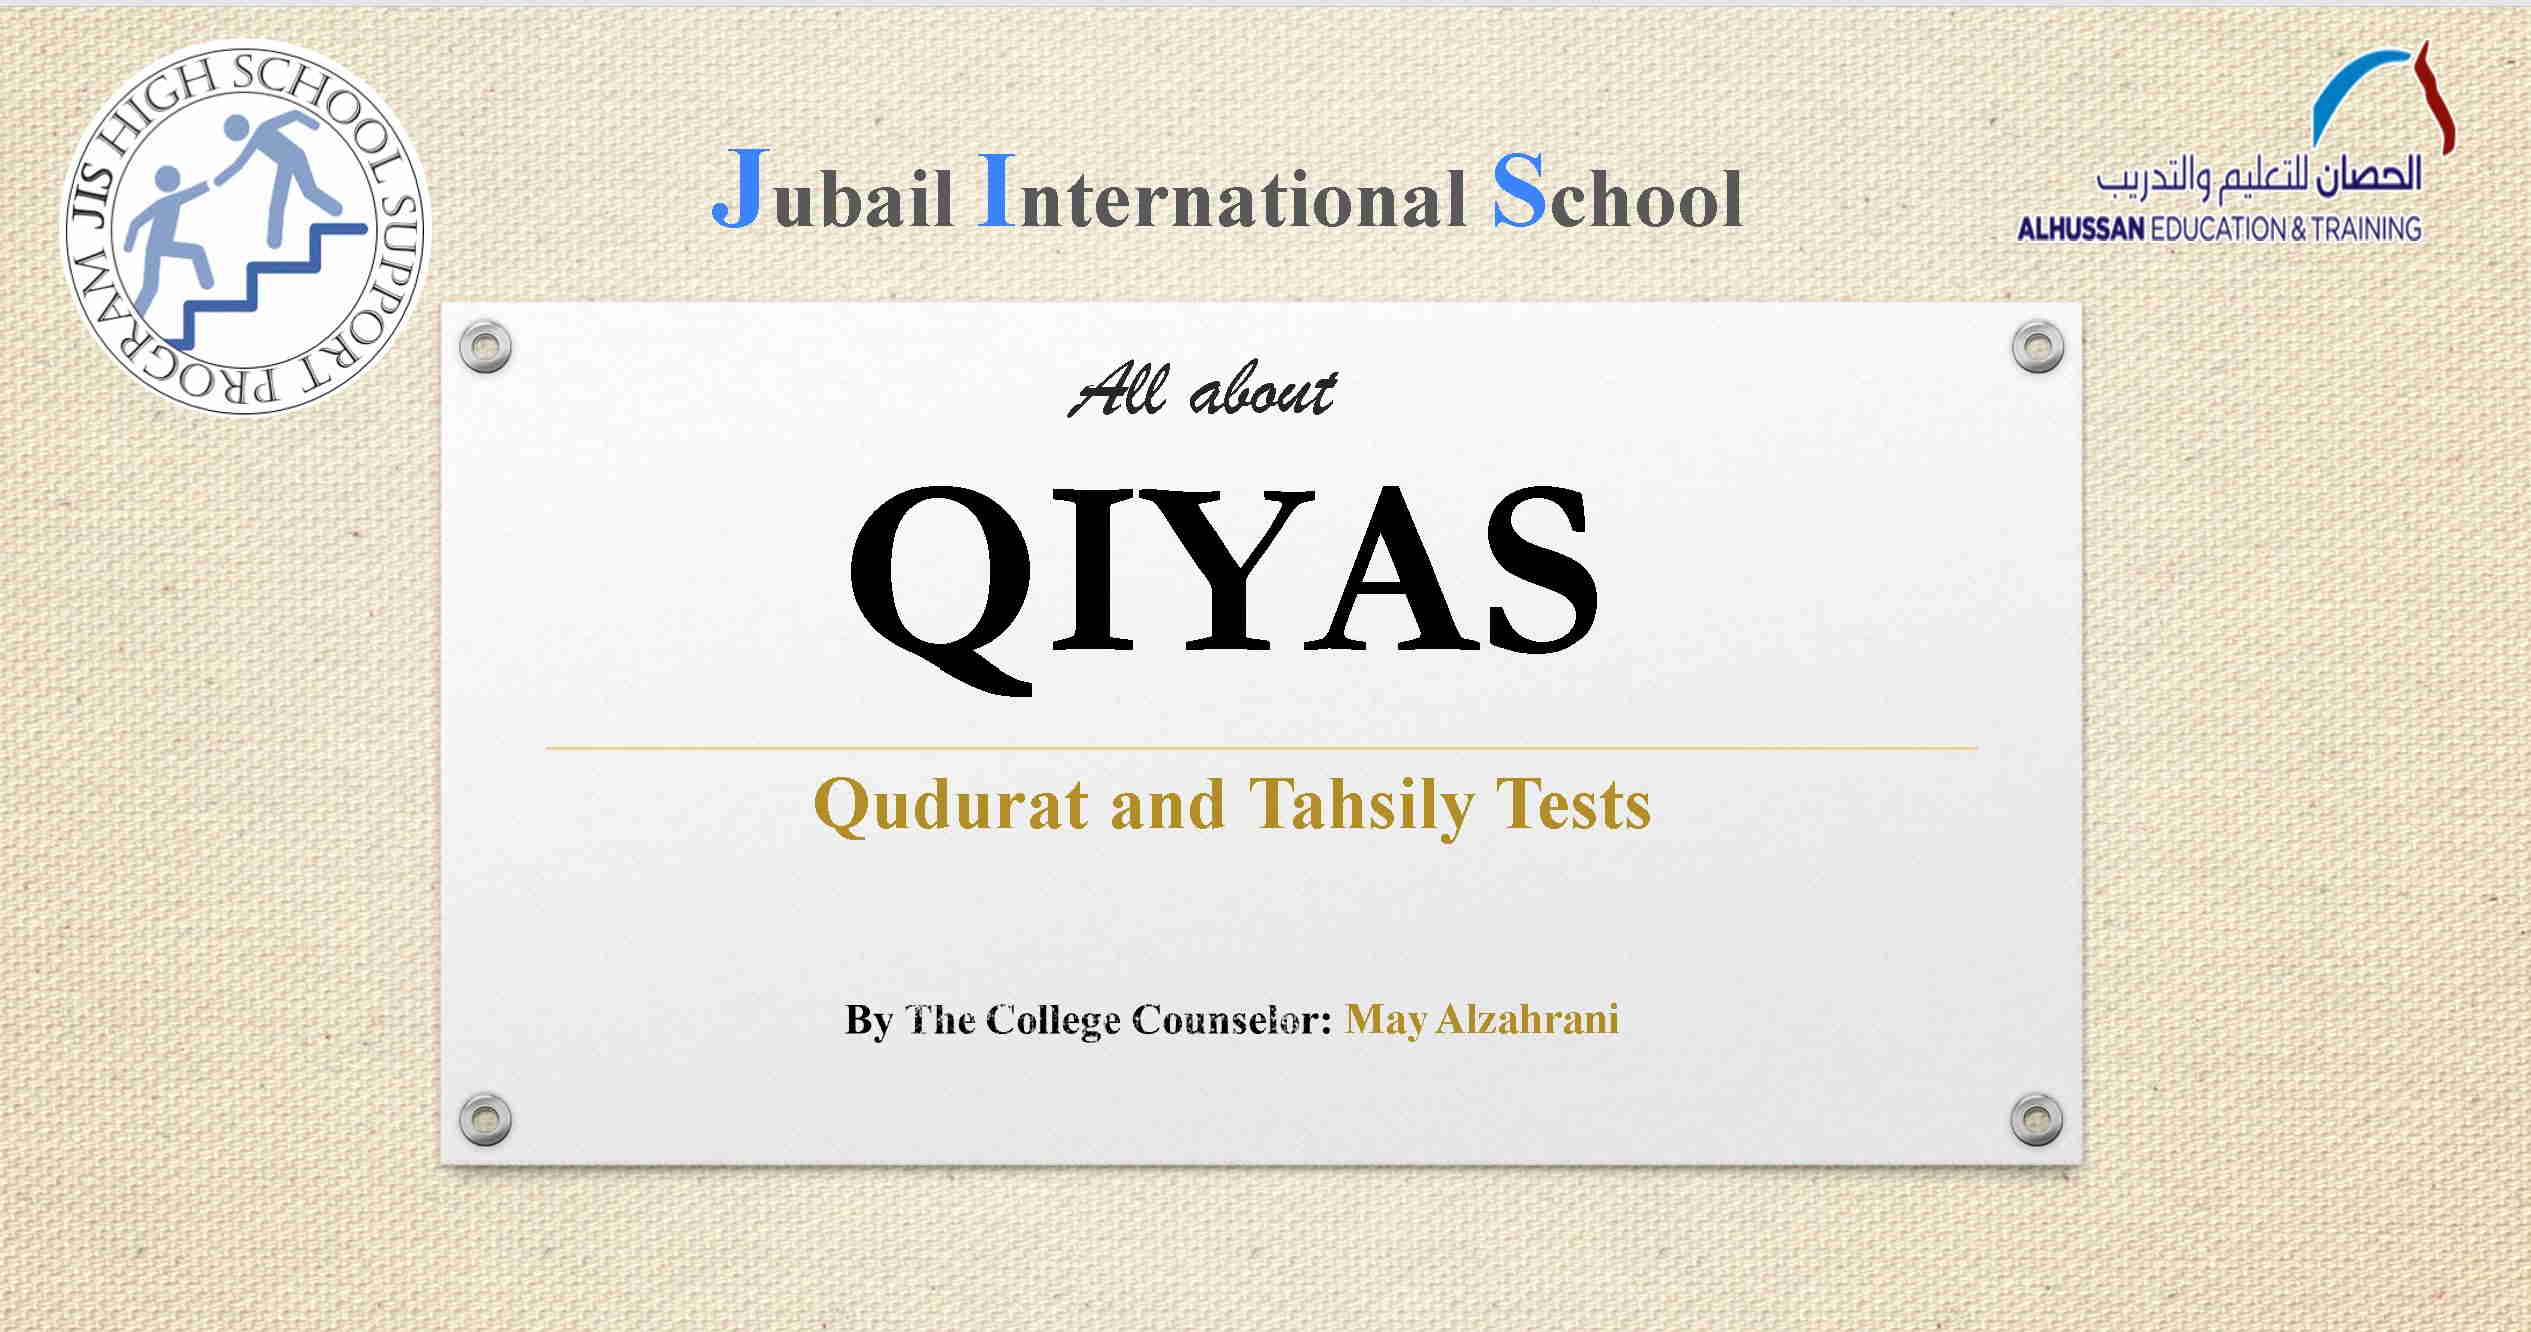 Qiyas